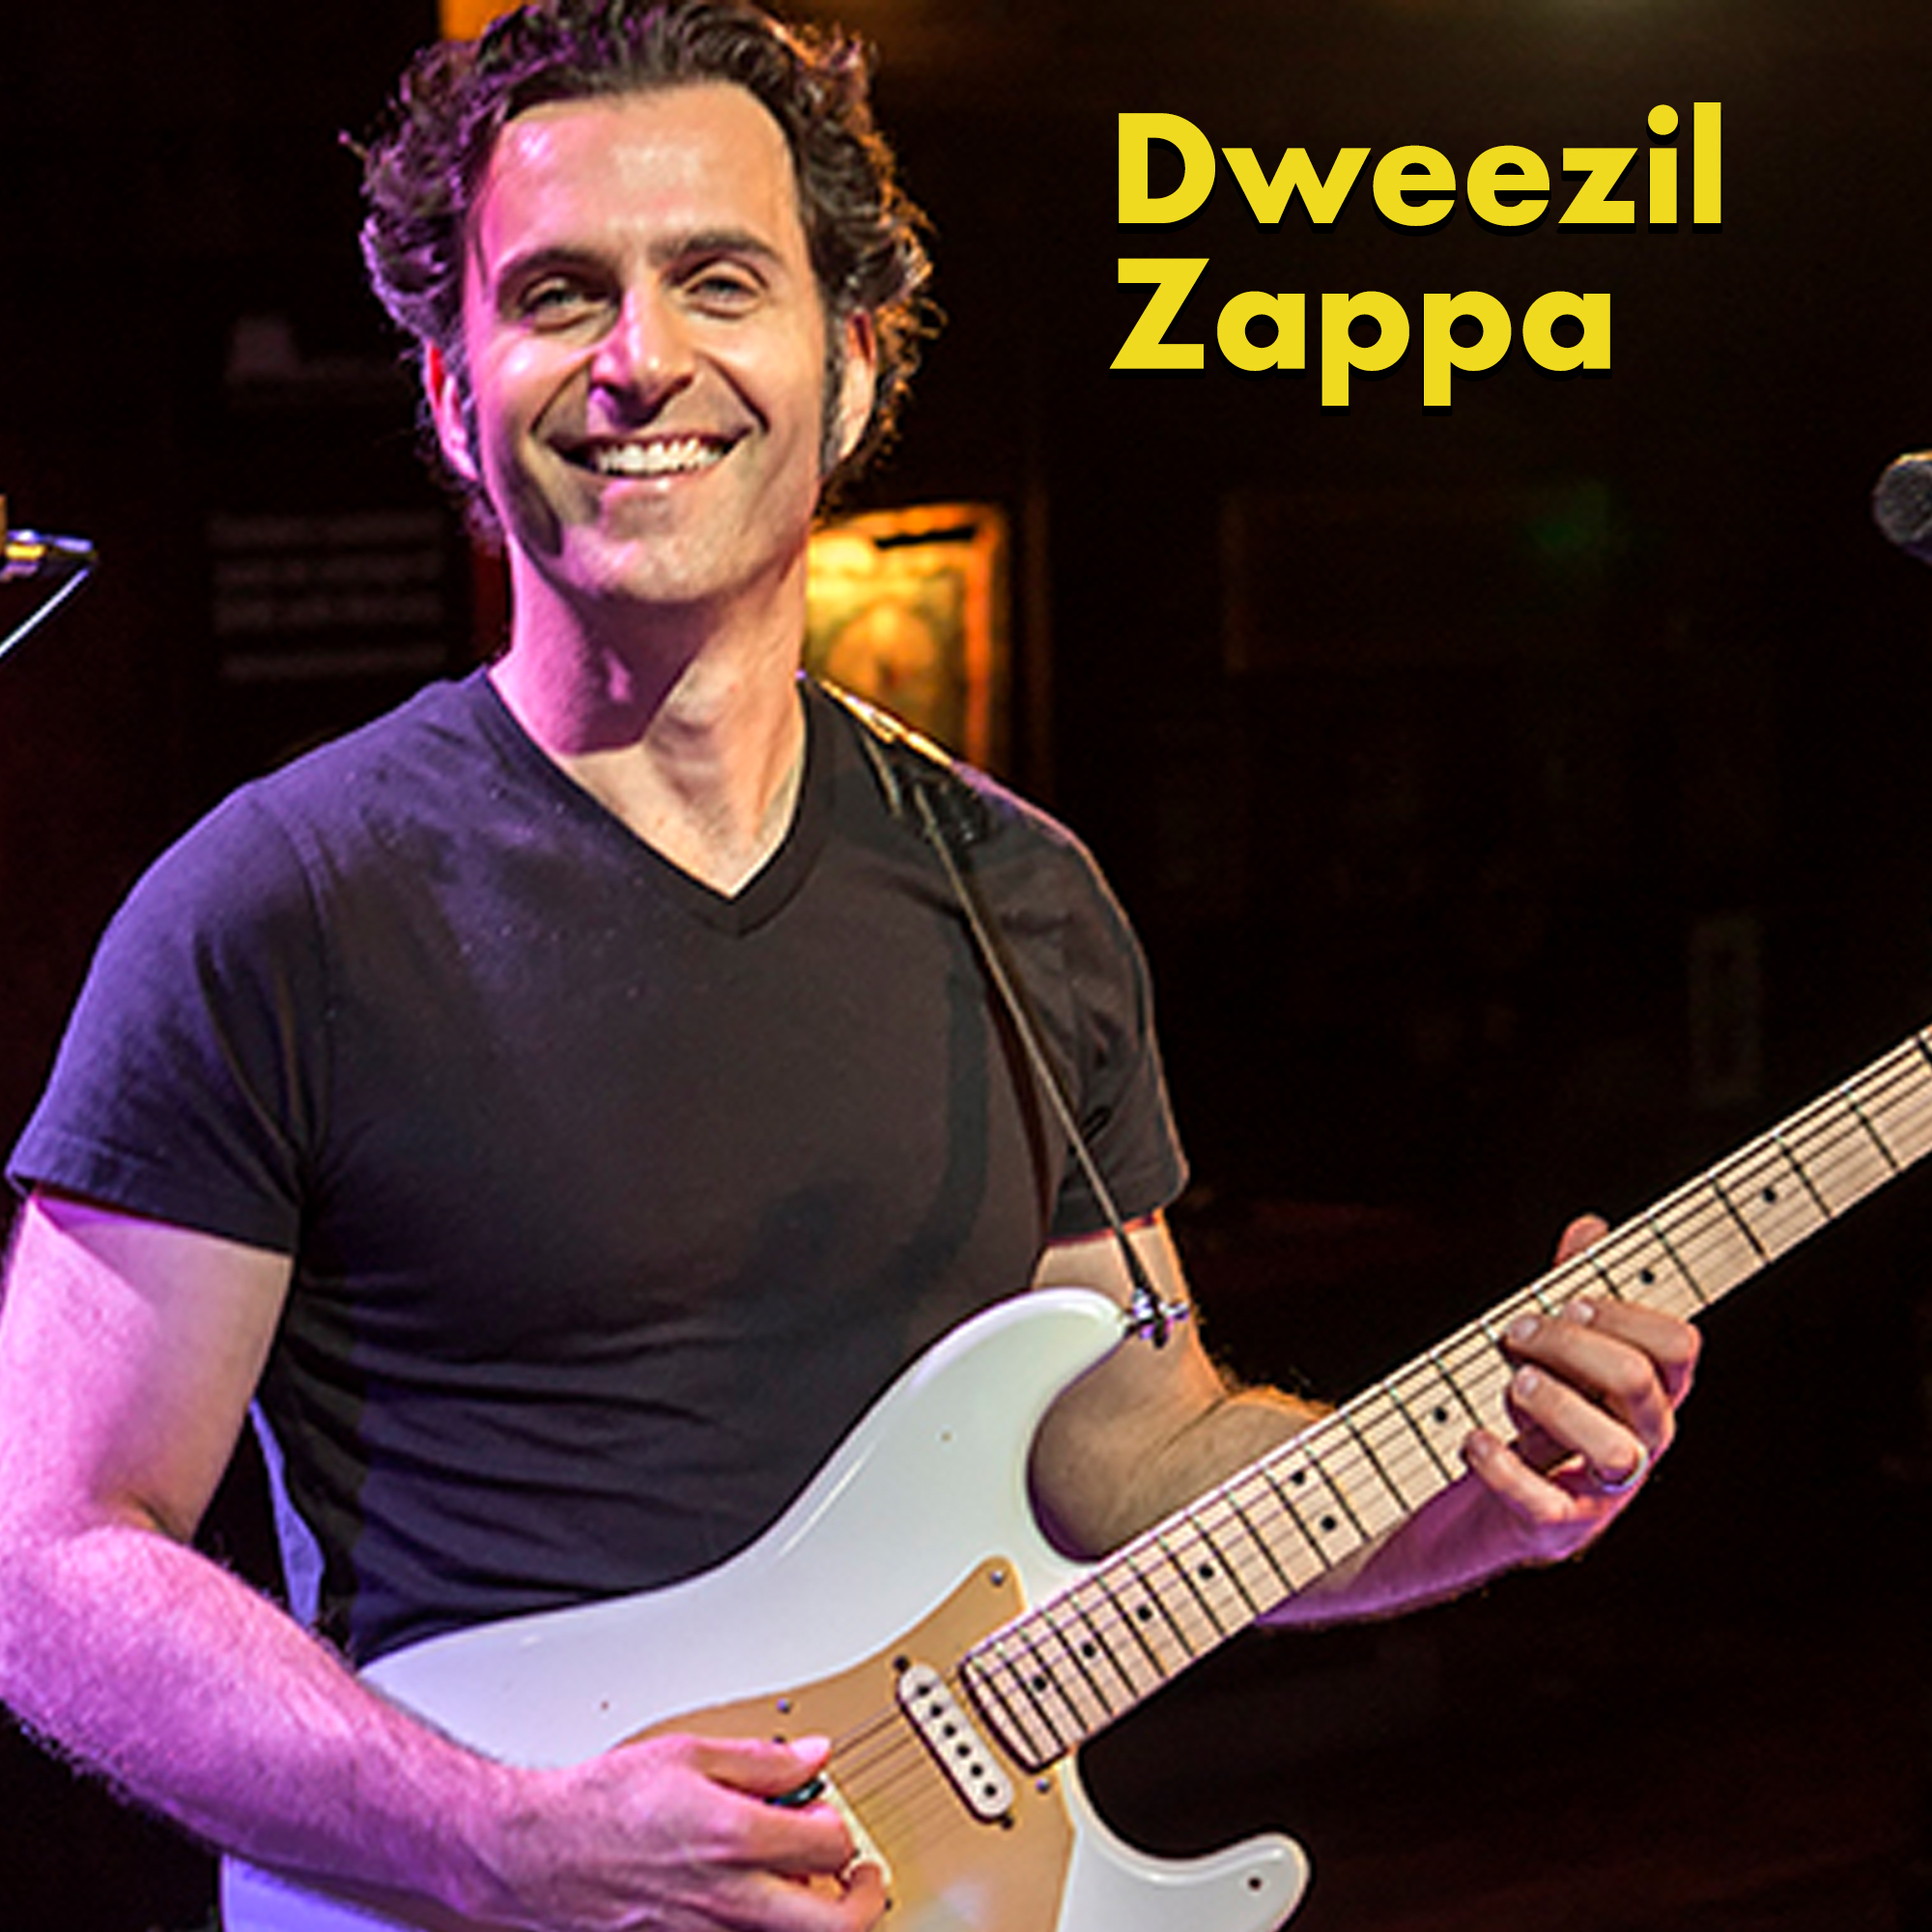 Terrible celeb baby names -dweezil zappa 2021 - Dweezil Zappa